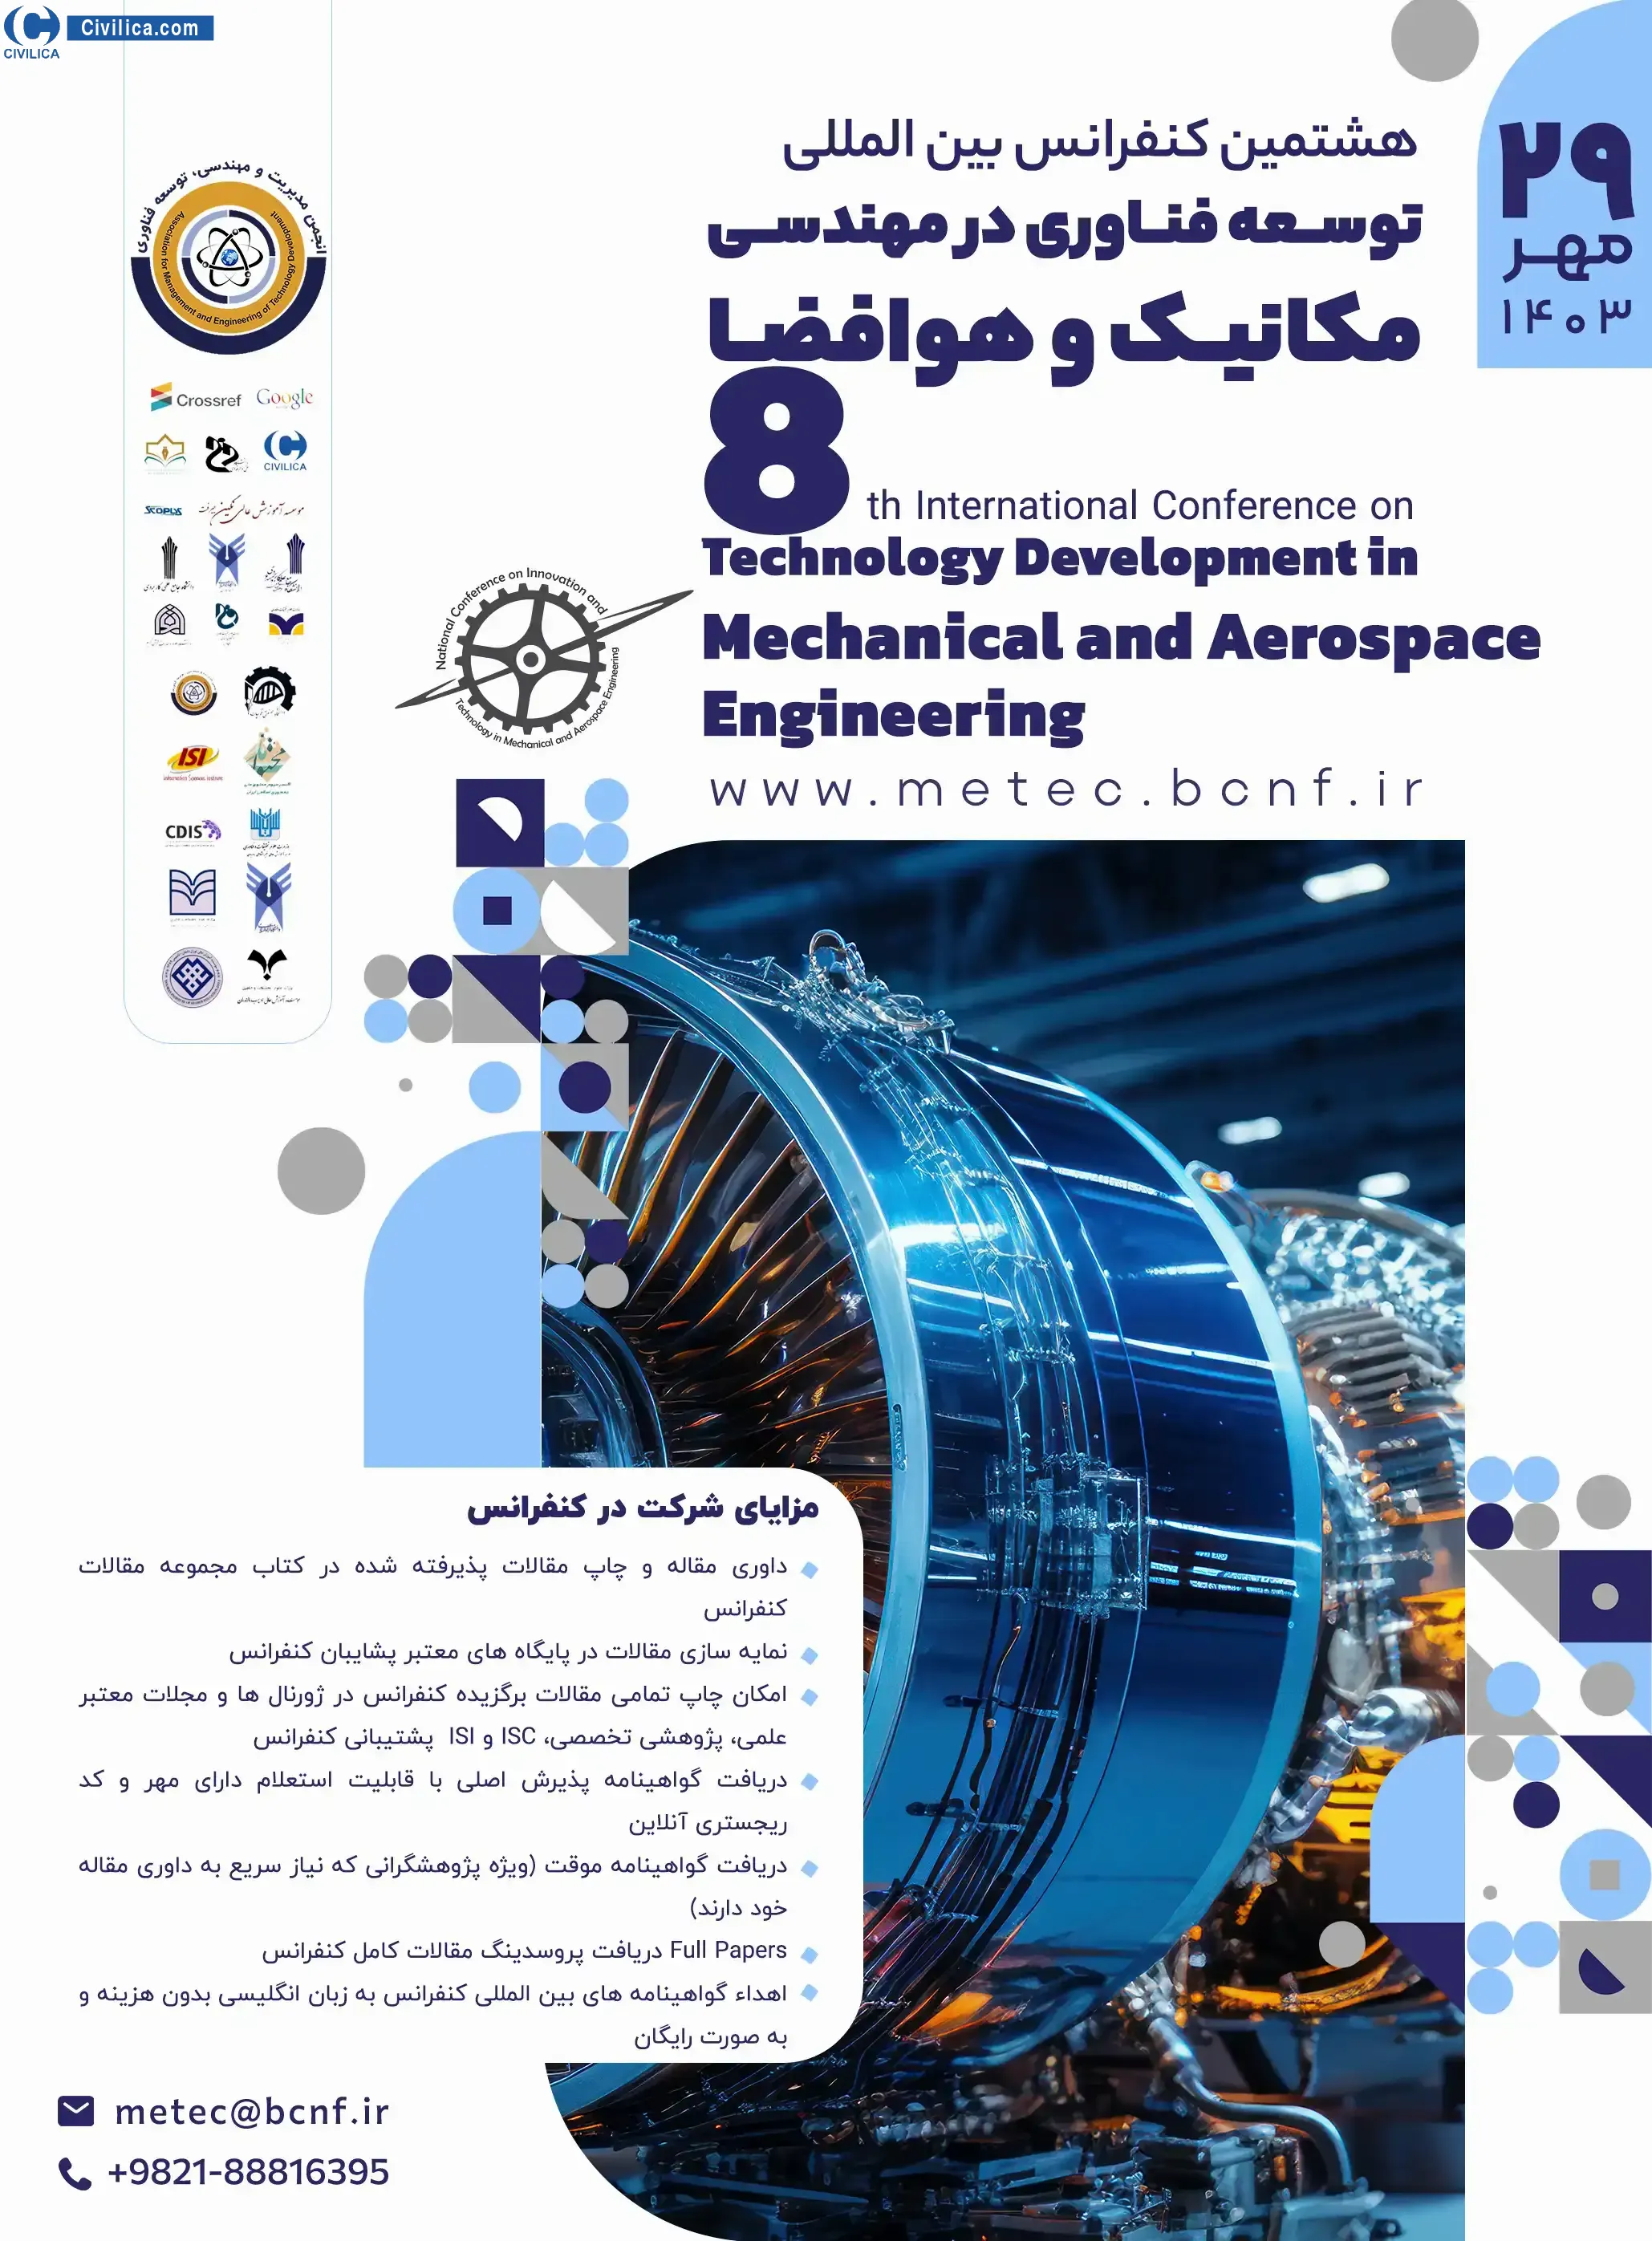 هشتمین کنفرانس بین المللی توسعه فناوری در مهندسی مکانیک و هوافضا